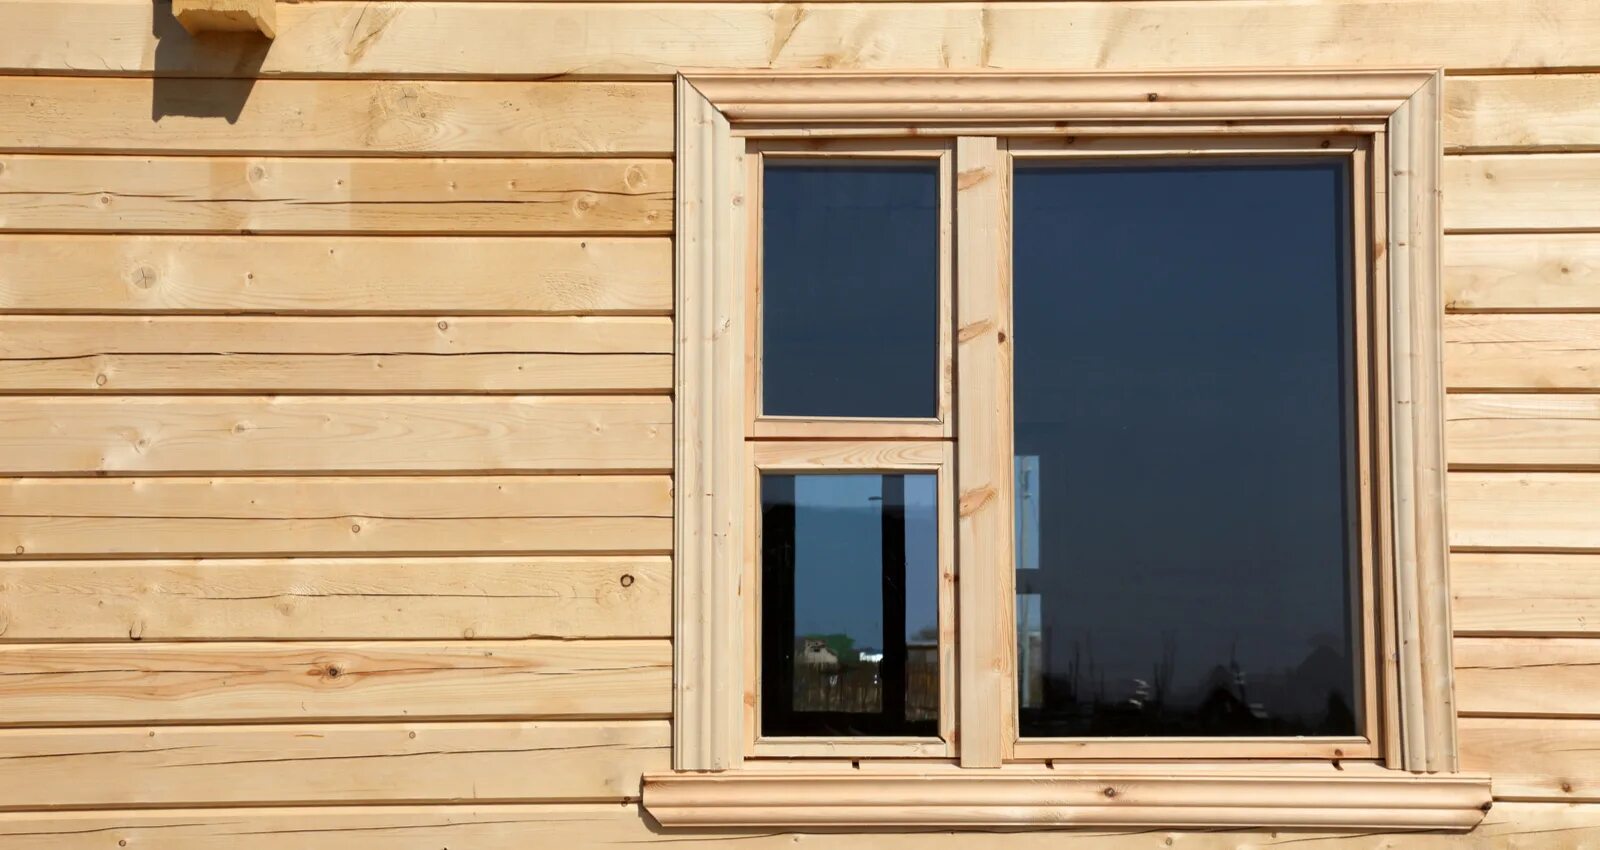 Пластиковое окно в брус. Окна в деревянном доме. Окна в доме из бруса. Деревянные окна в деревянном доме. Окна в деревянном доме из бруса.